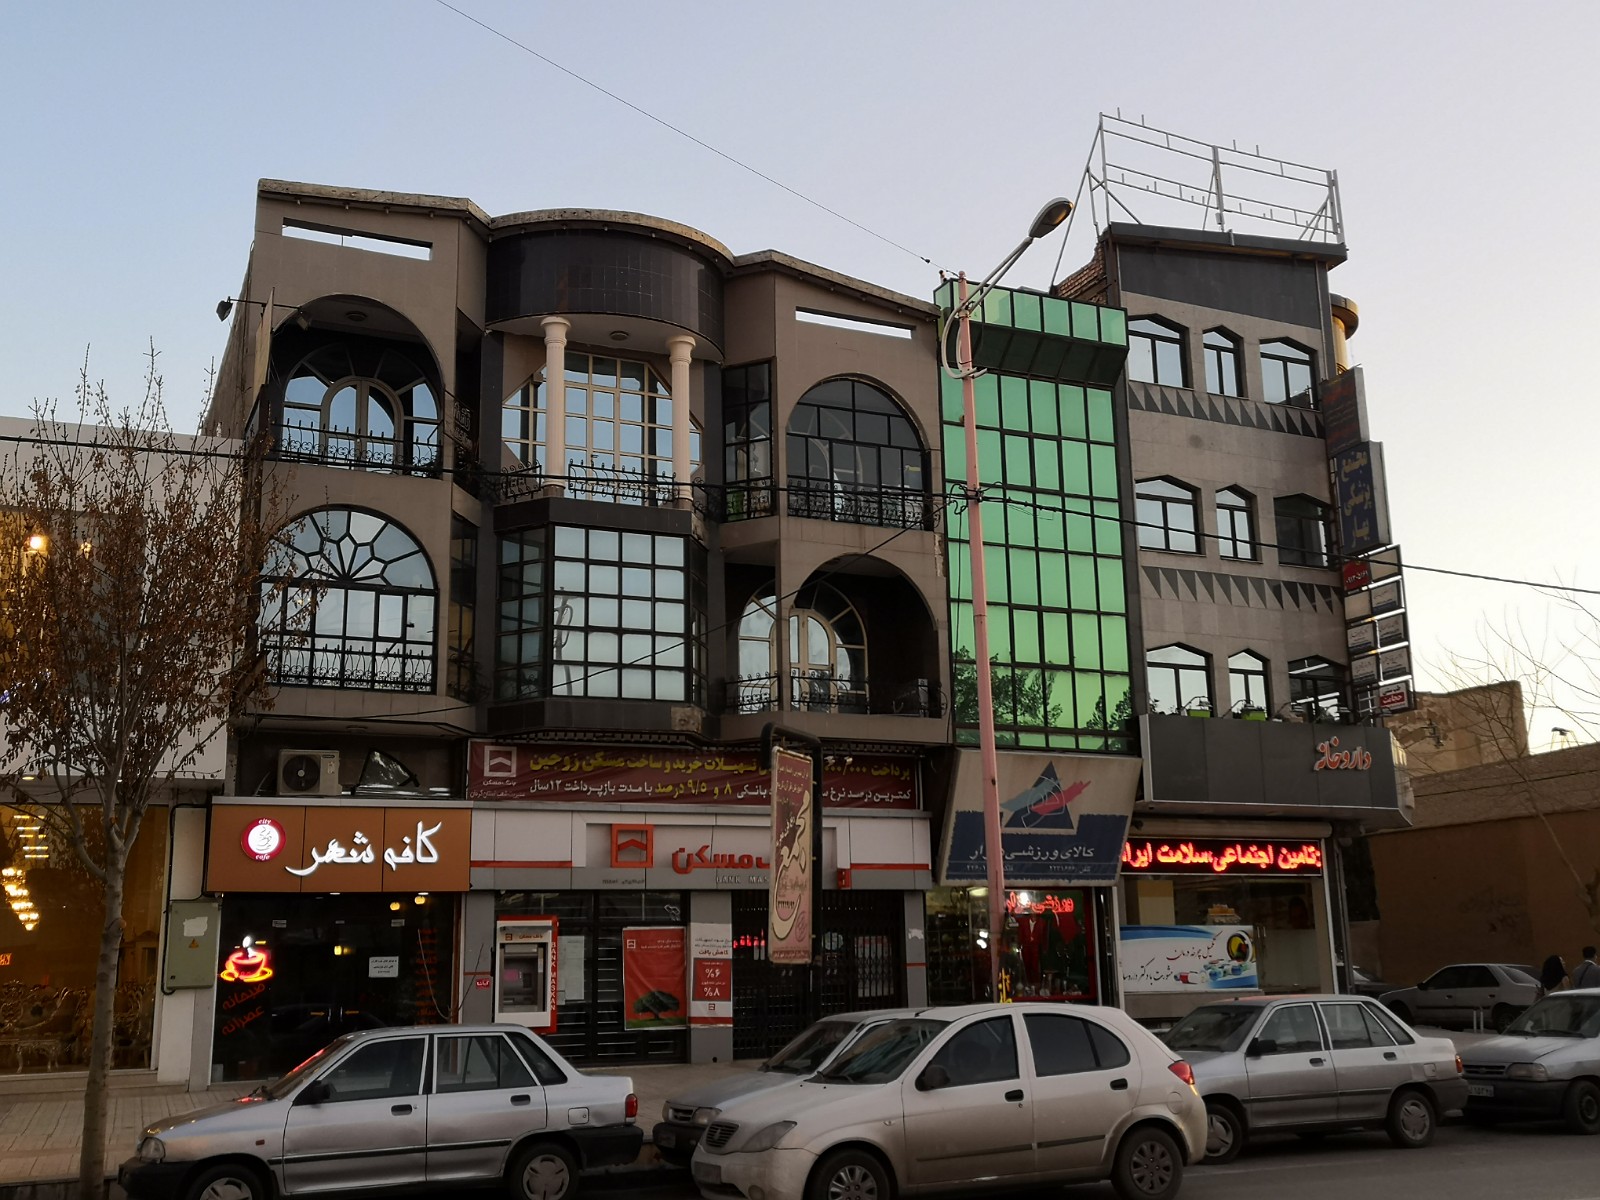 68. Jak nietuzinkowe okna mogą poprawić funkcjonalność i wygląd budynku - Kerman, Iran.